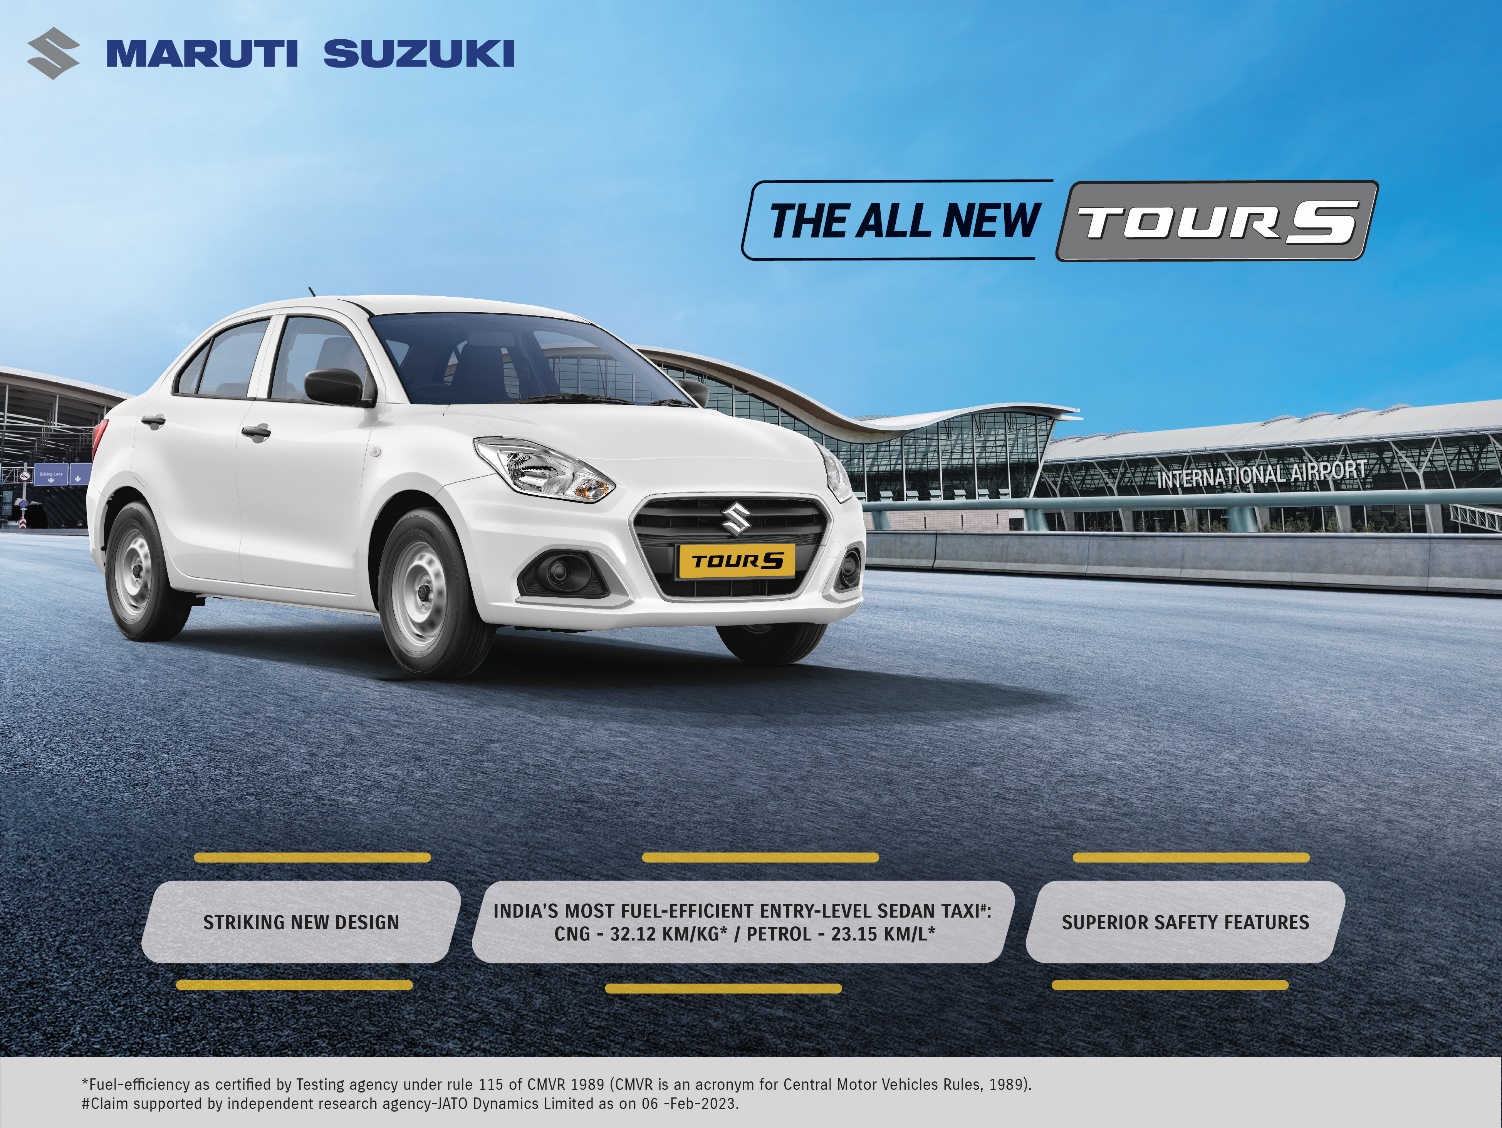 2023 Maruti Suzuki Tour S Launched